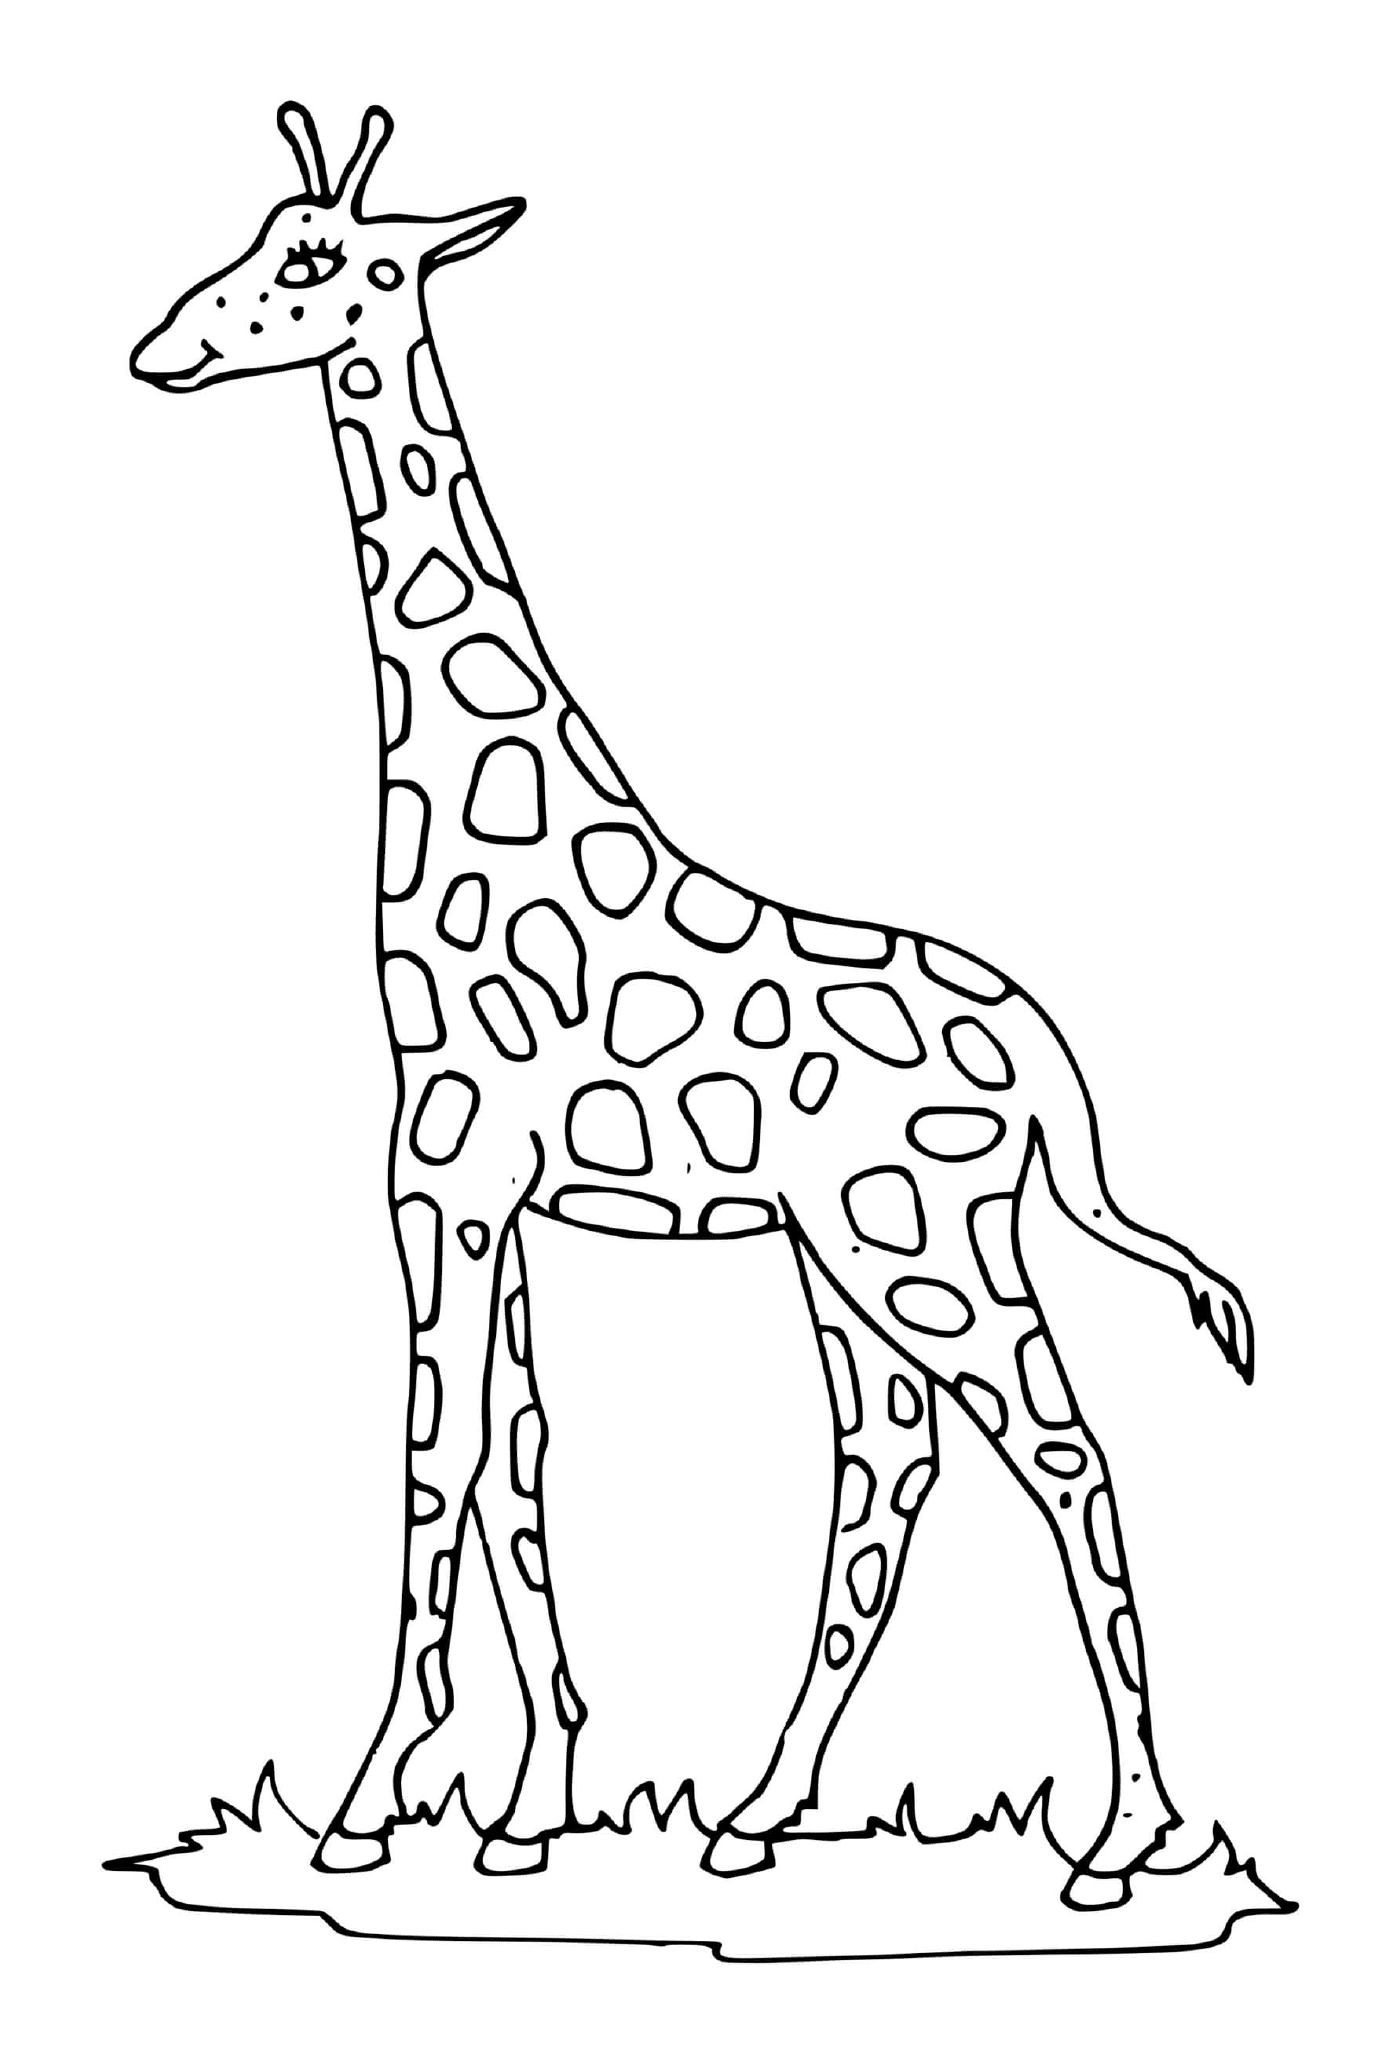  Girafe mit einem langen Hals 